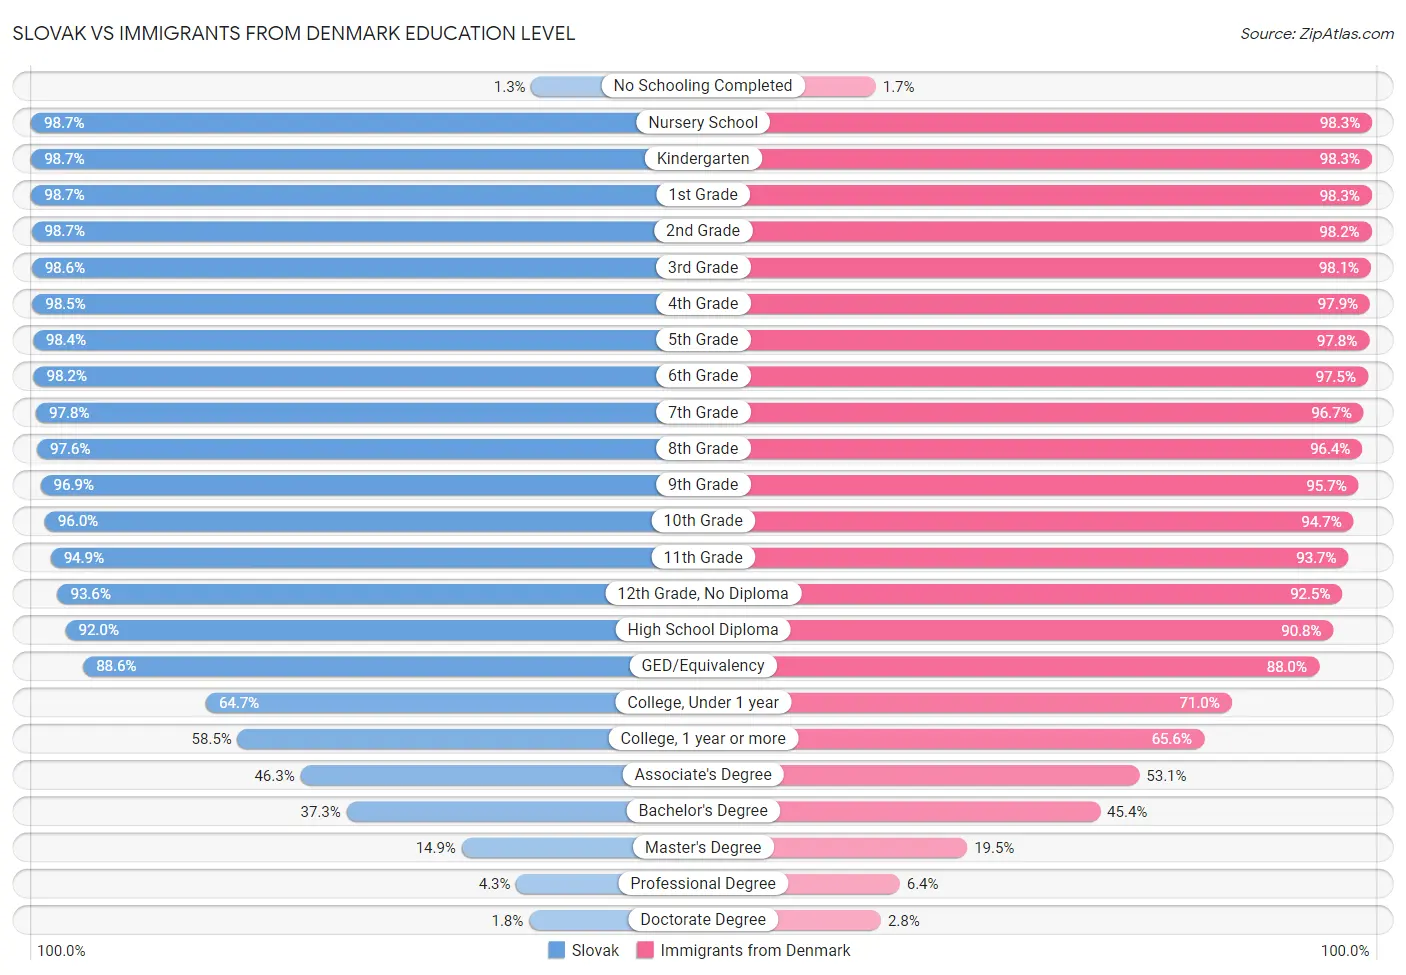 Slovak vs Immigrants from Denmark Education Level